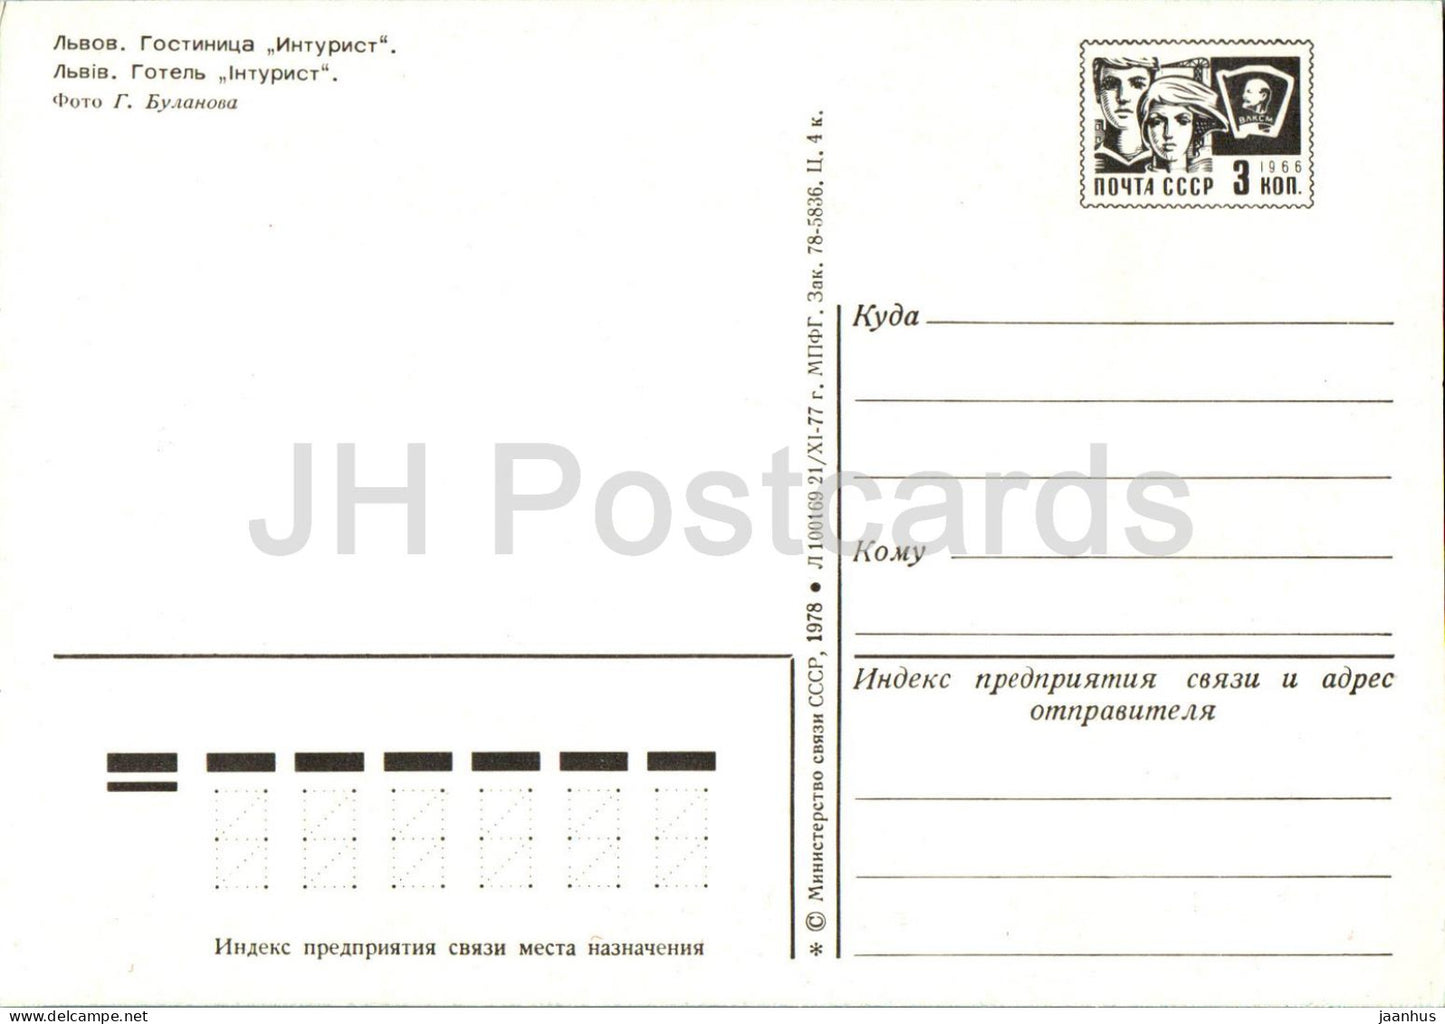 Lviv - Lvov - hotel Intourist - bus Mecerdes Benz - postal stationery - 1978 - Ukraine USSR - unused